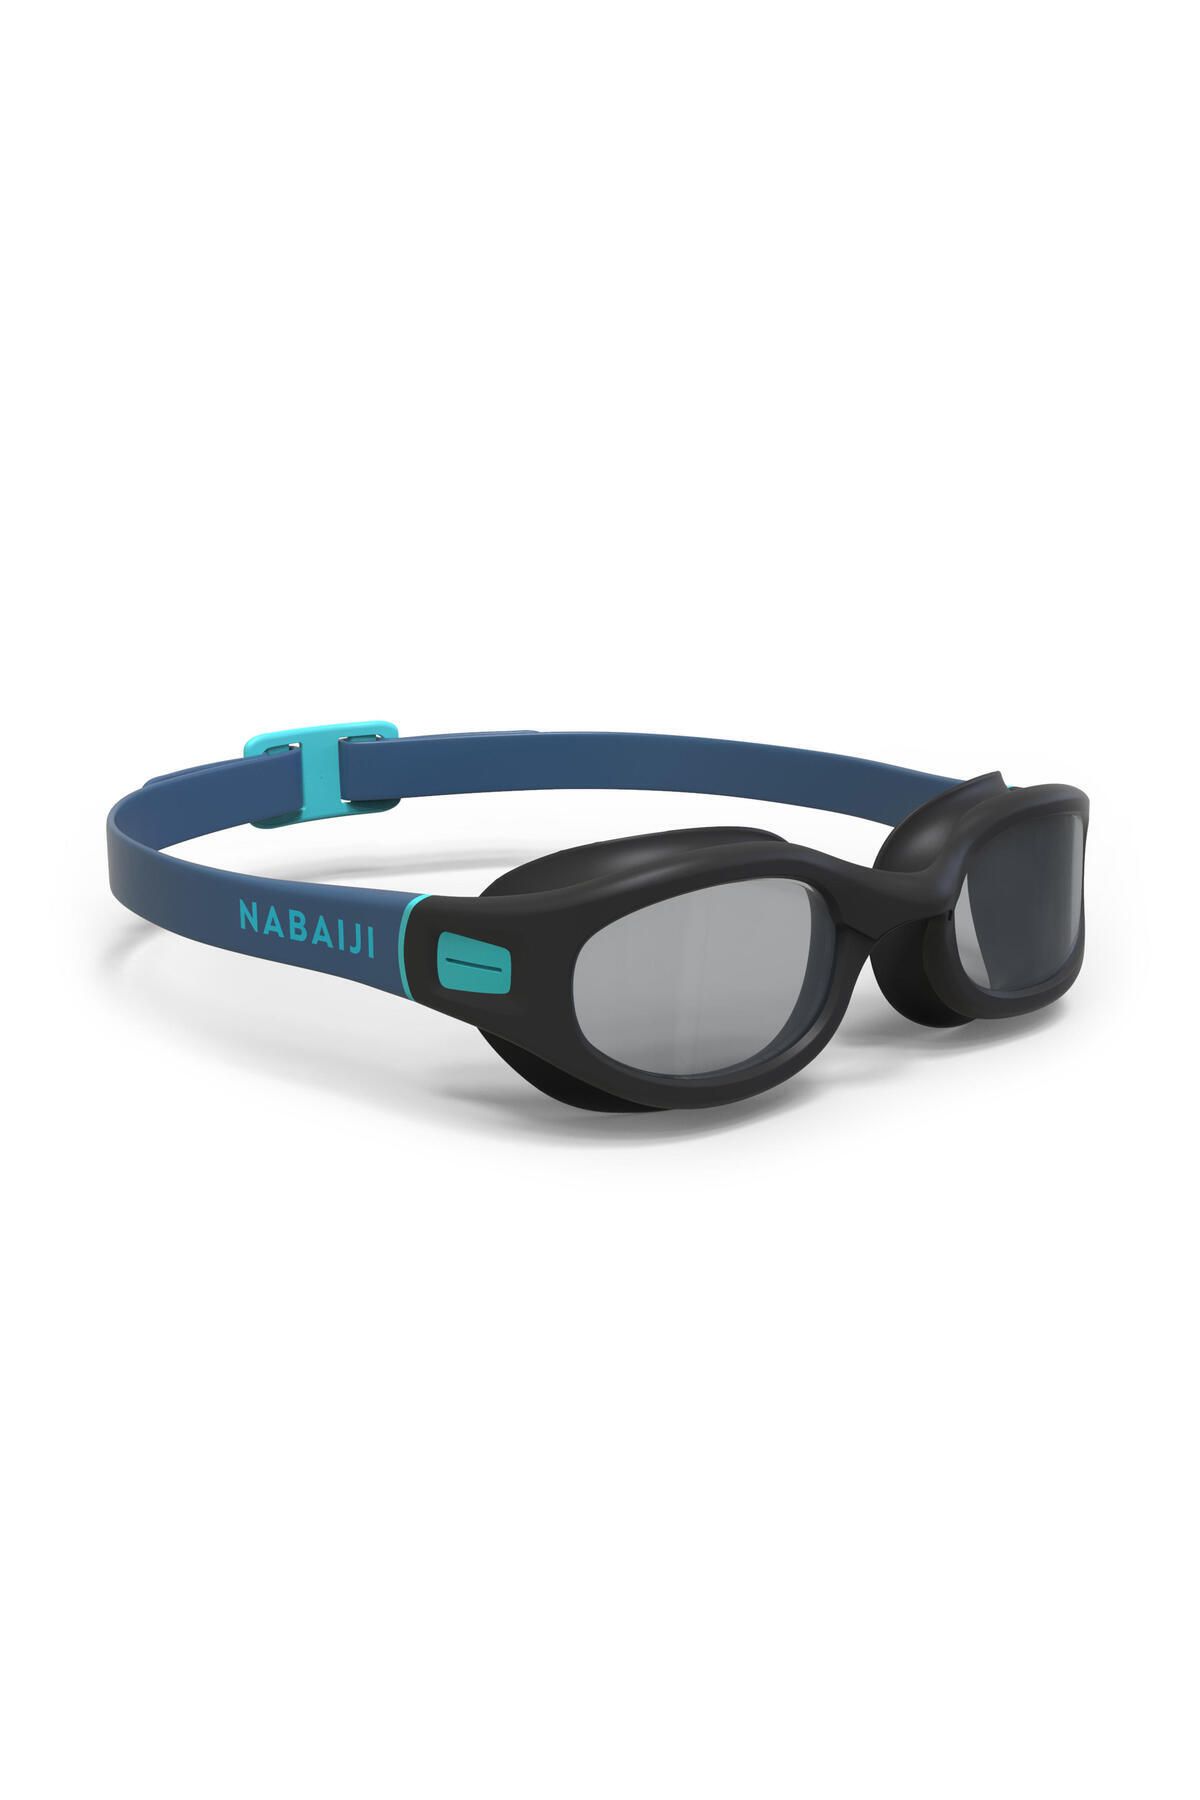 Decathlon Yüzücü Gözlüğü - L Boy - Siyah / Mavi - 100 Soft